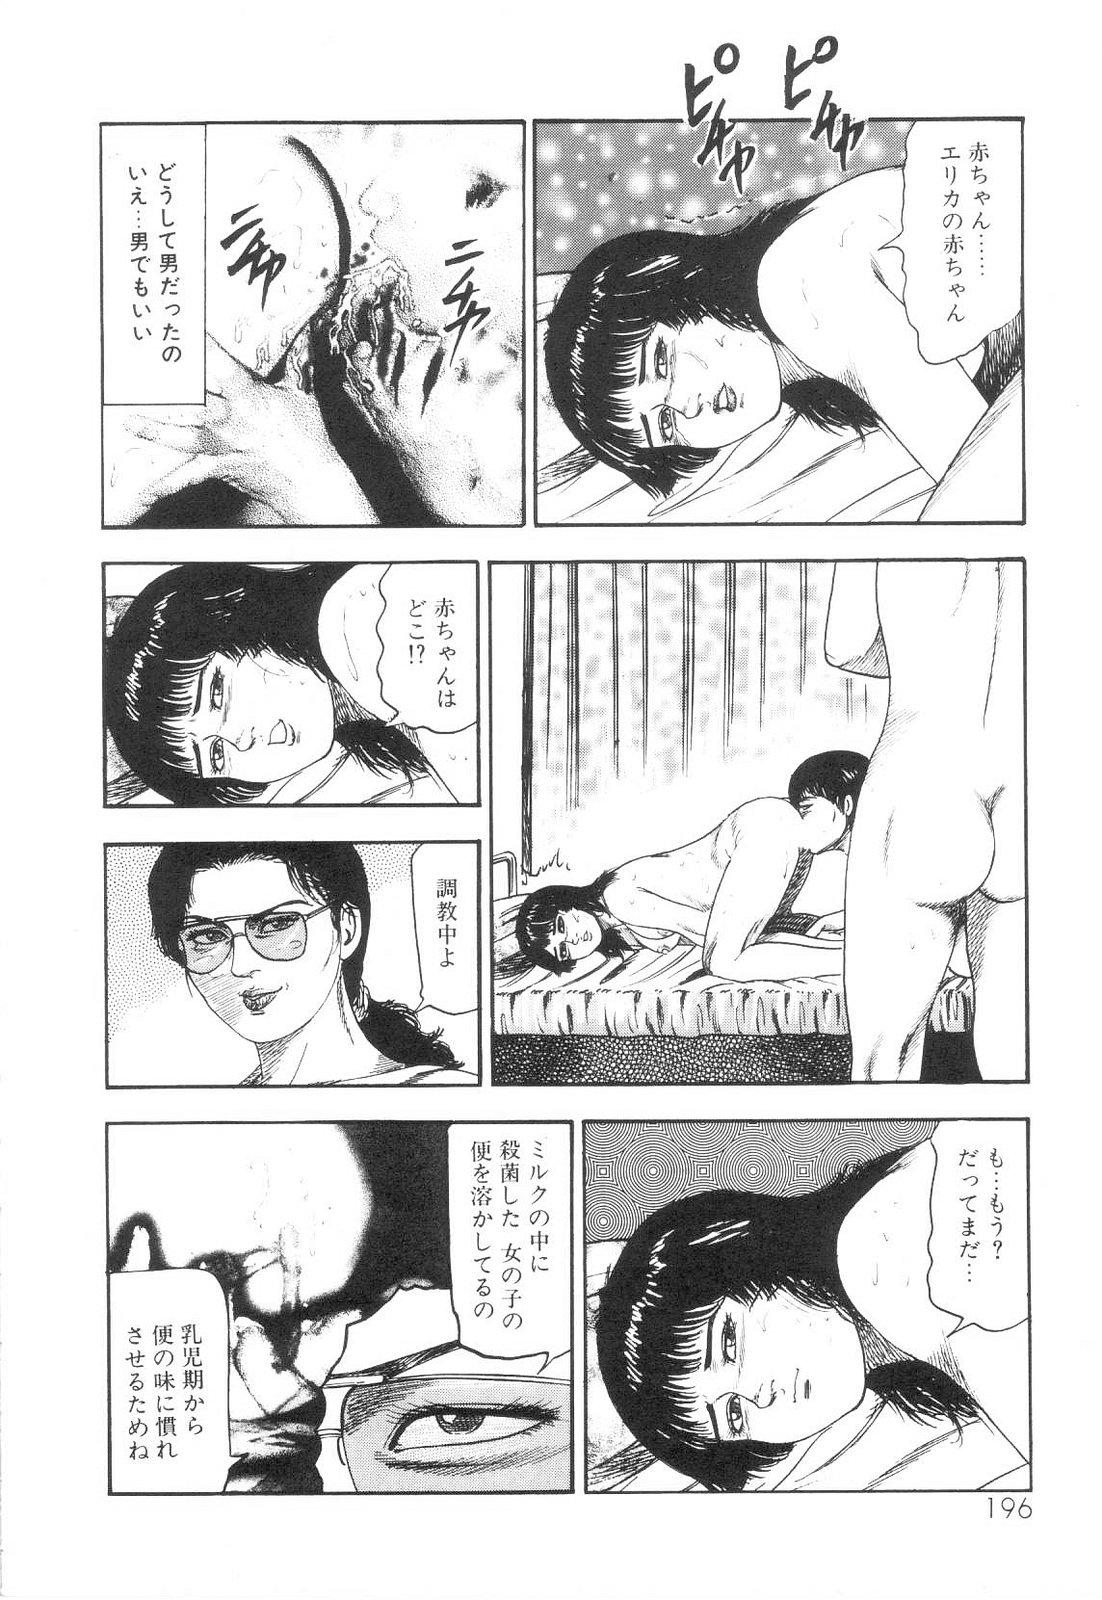 Shiro no Mokushiroku Vol. 6 - Juuai Erika no Shou 197